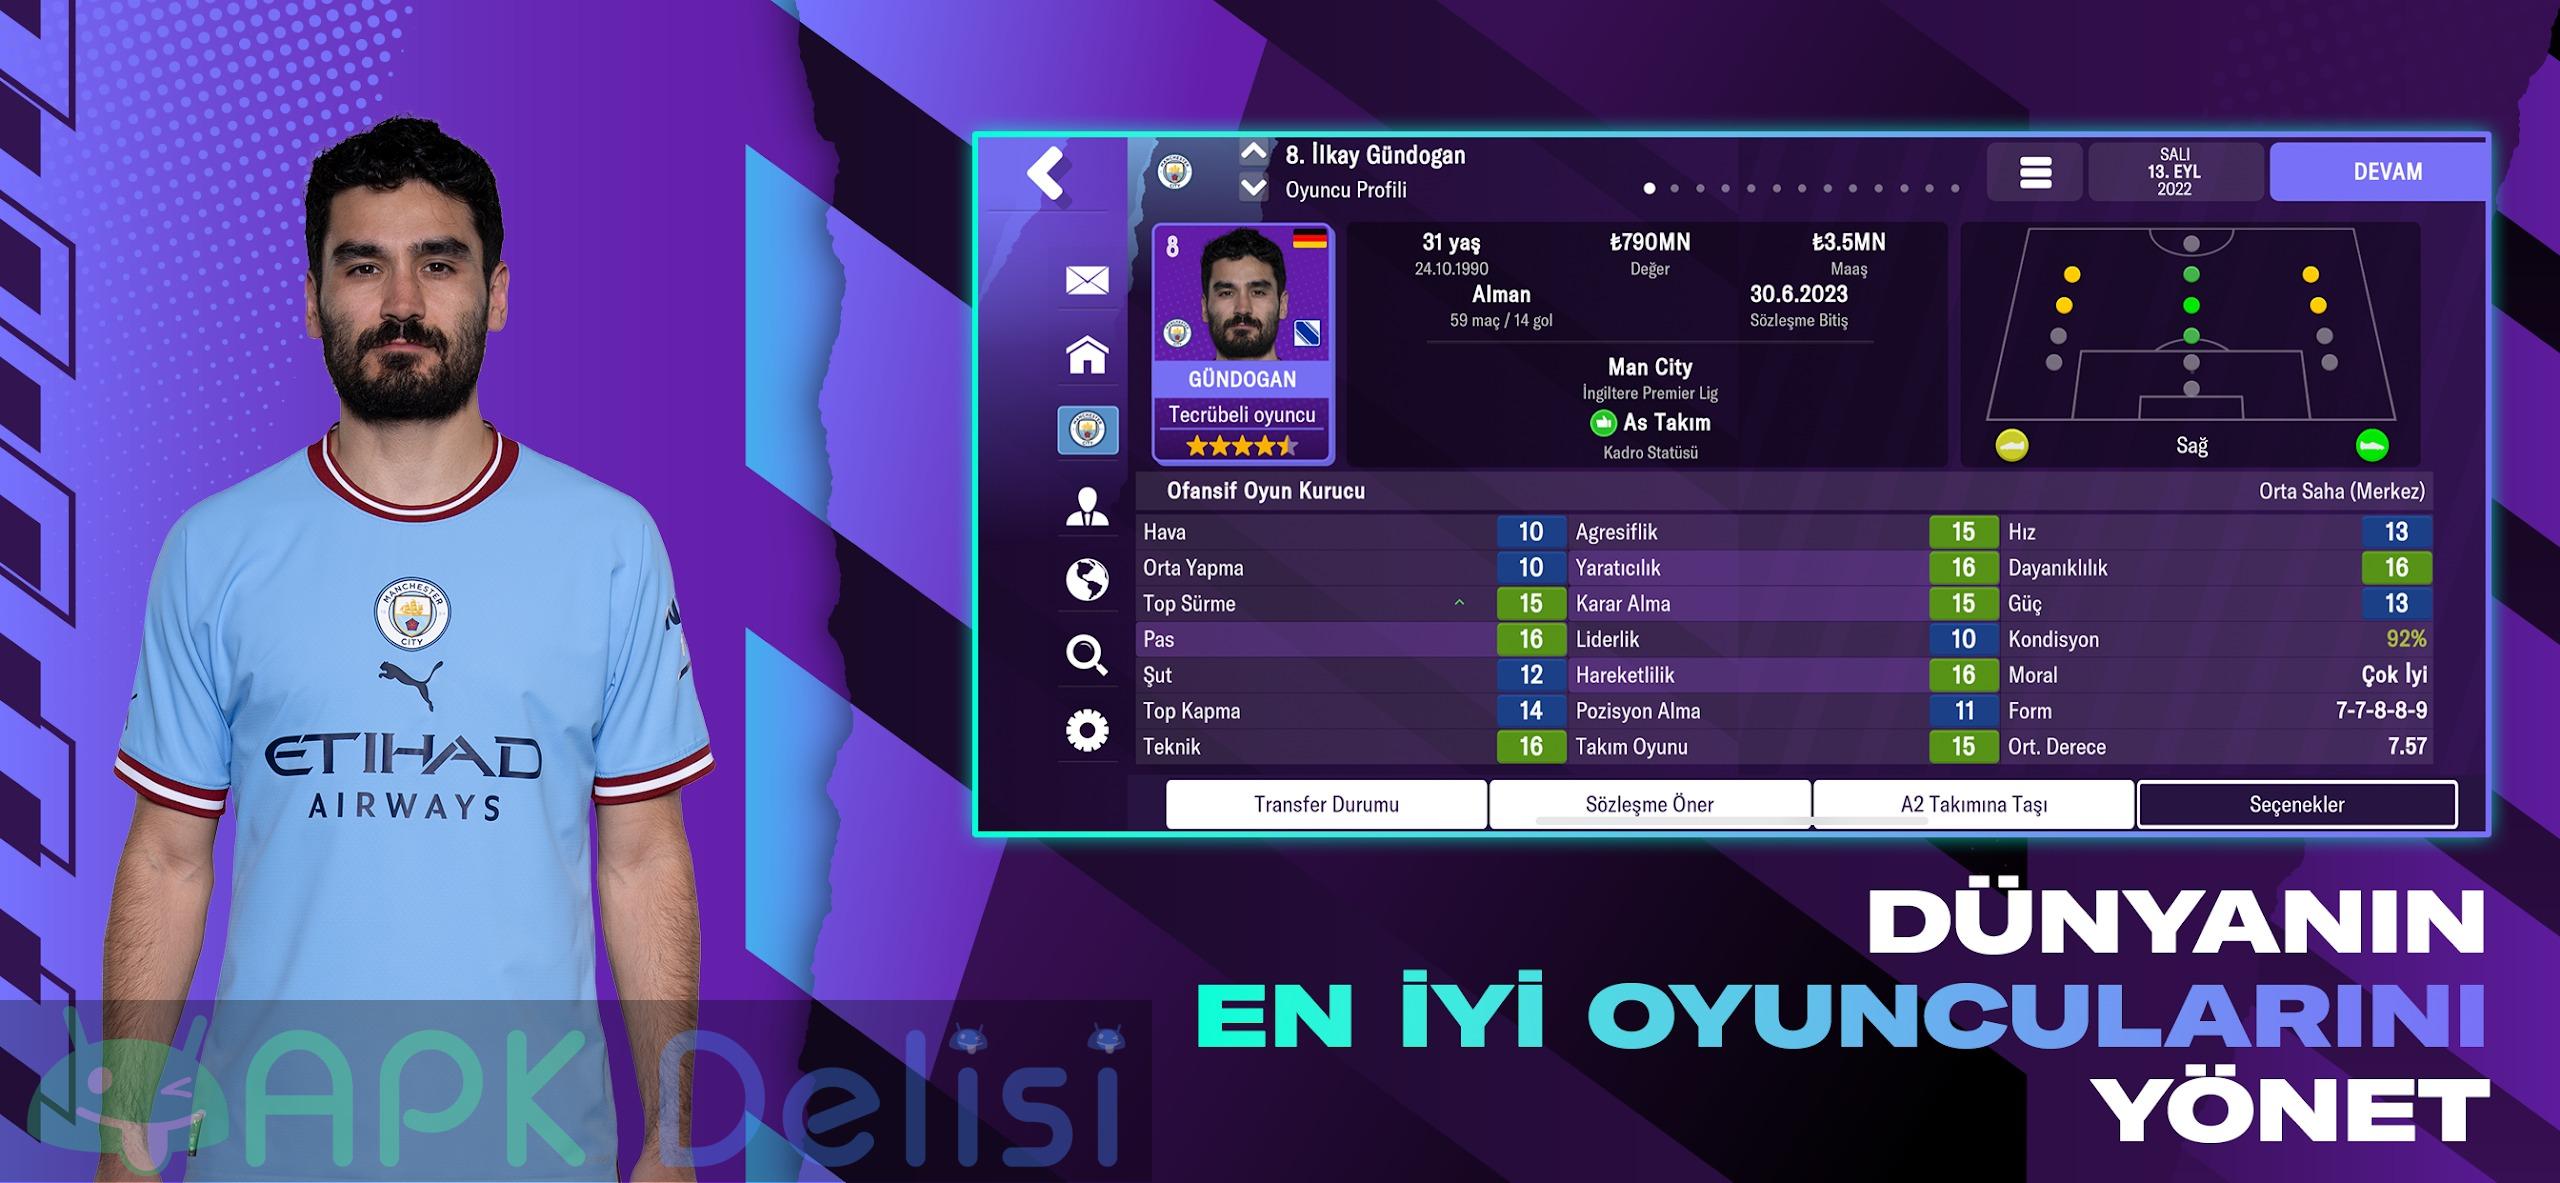 Football Manager 2023 Mobile v14.0.4 FULL APK — TAM SÜRÜM 1